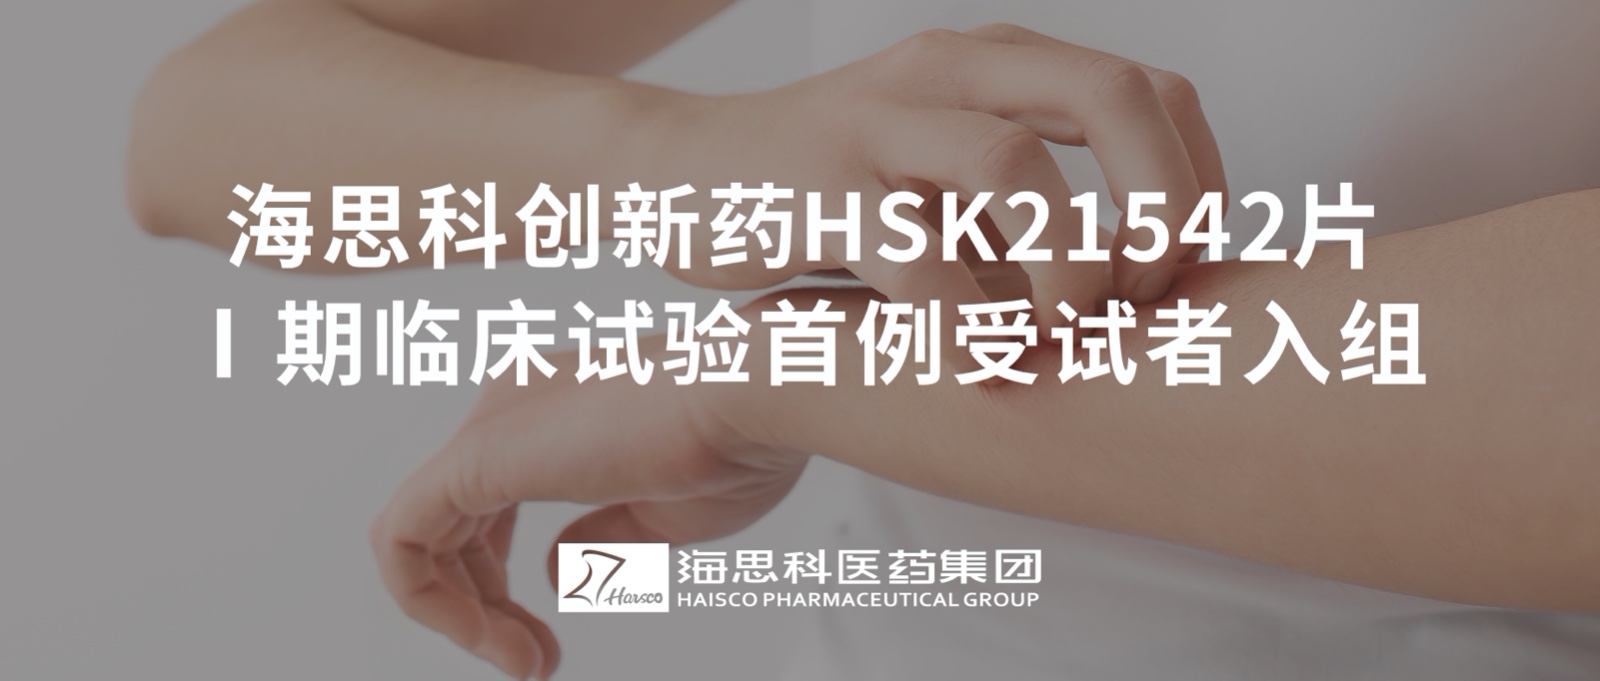 2138太阳诚娱乐官网创新药HSK21542片Ⅰ期临床试验首例受试者入组